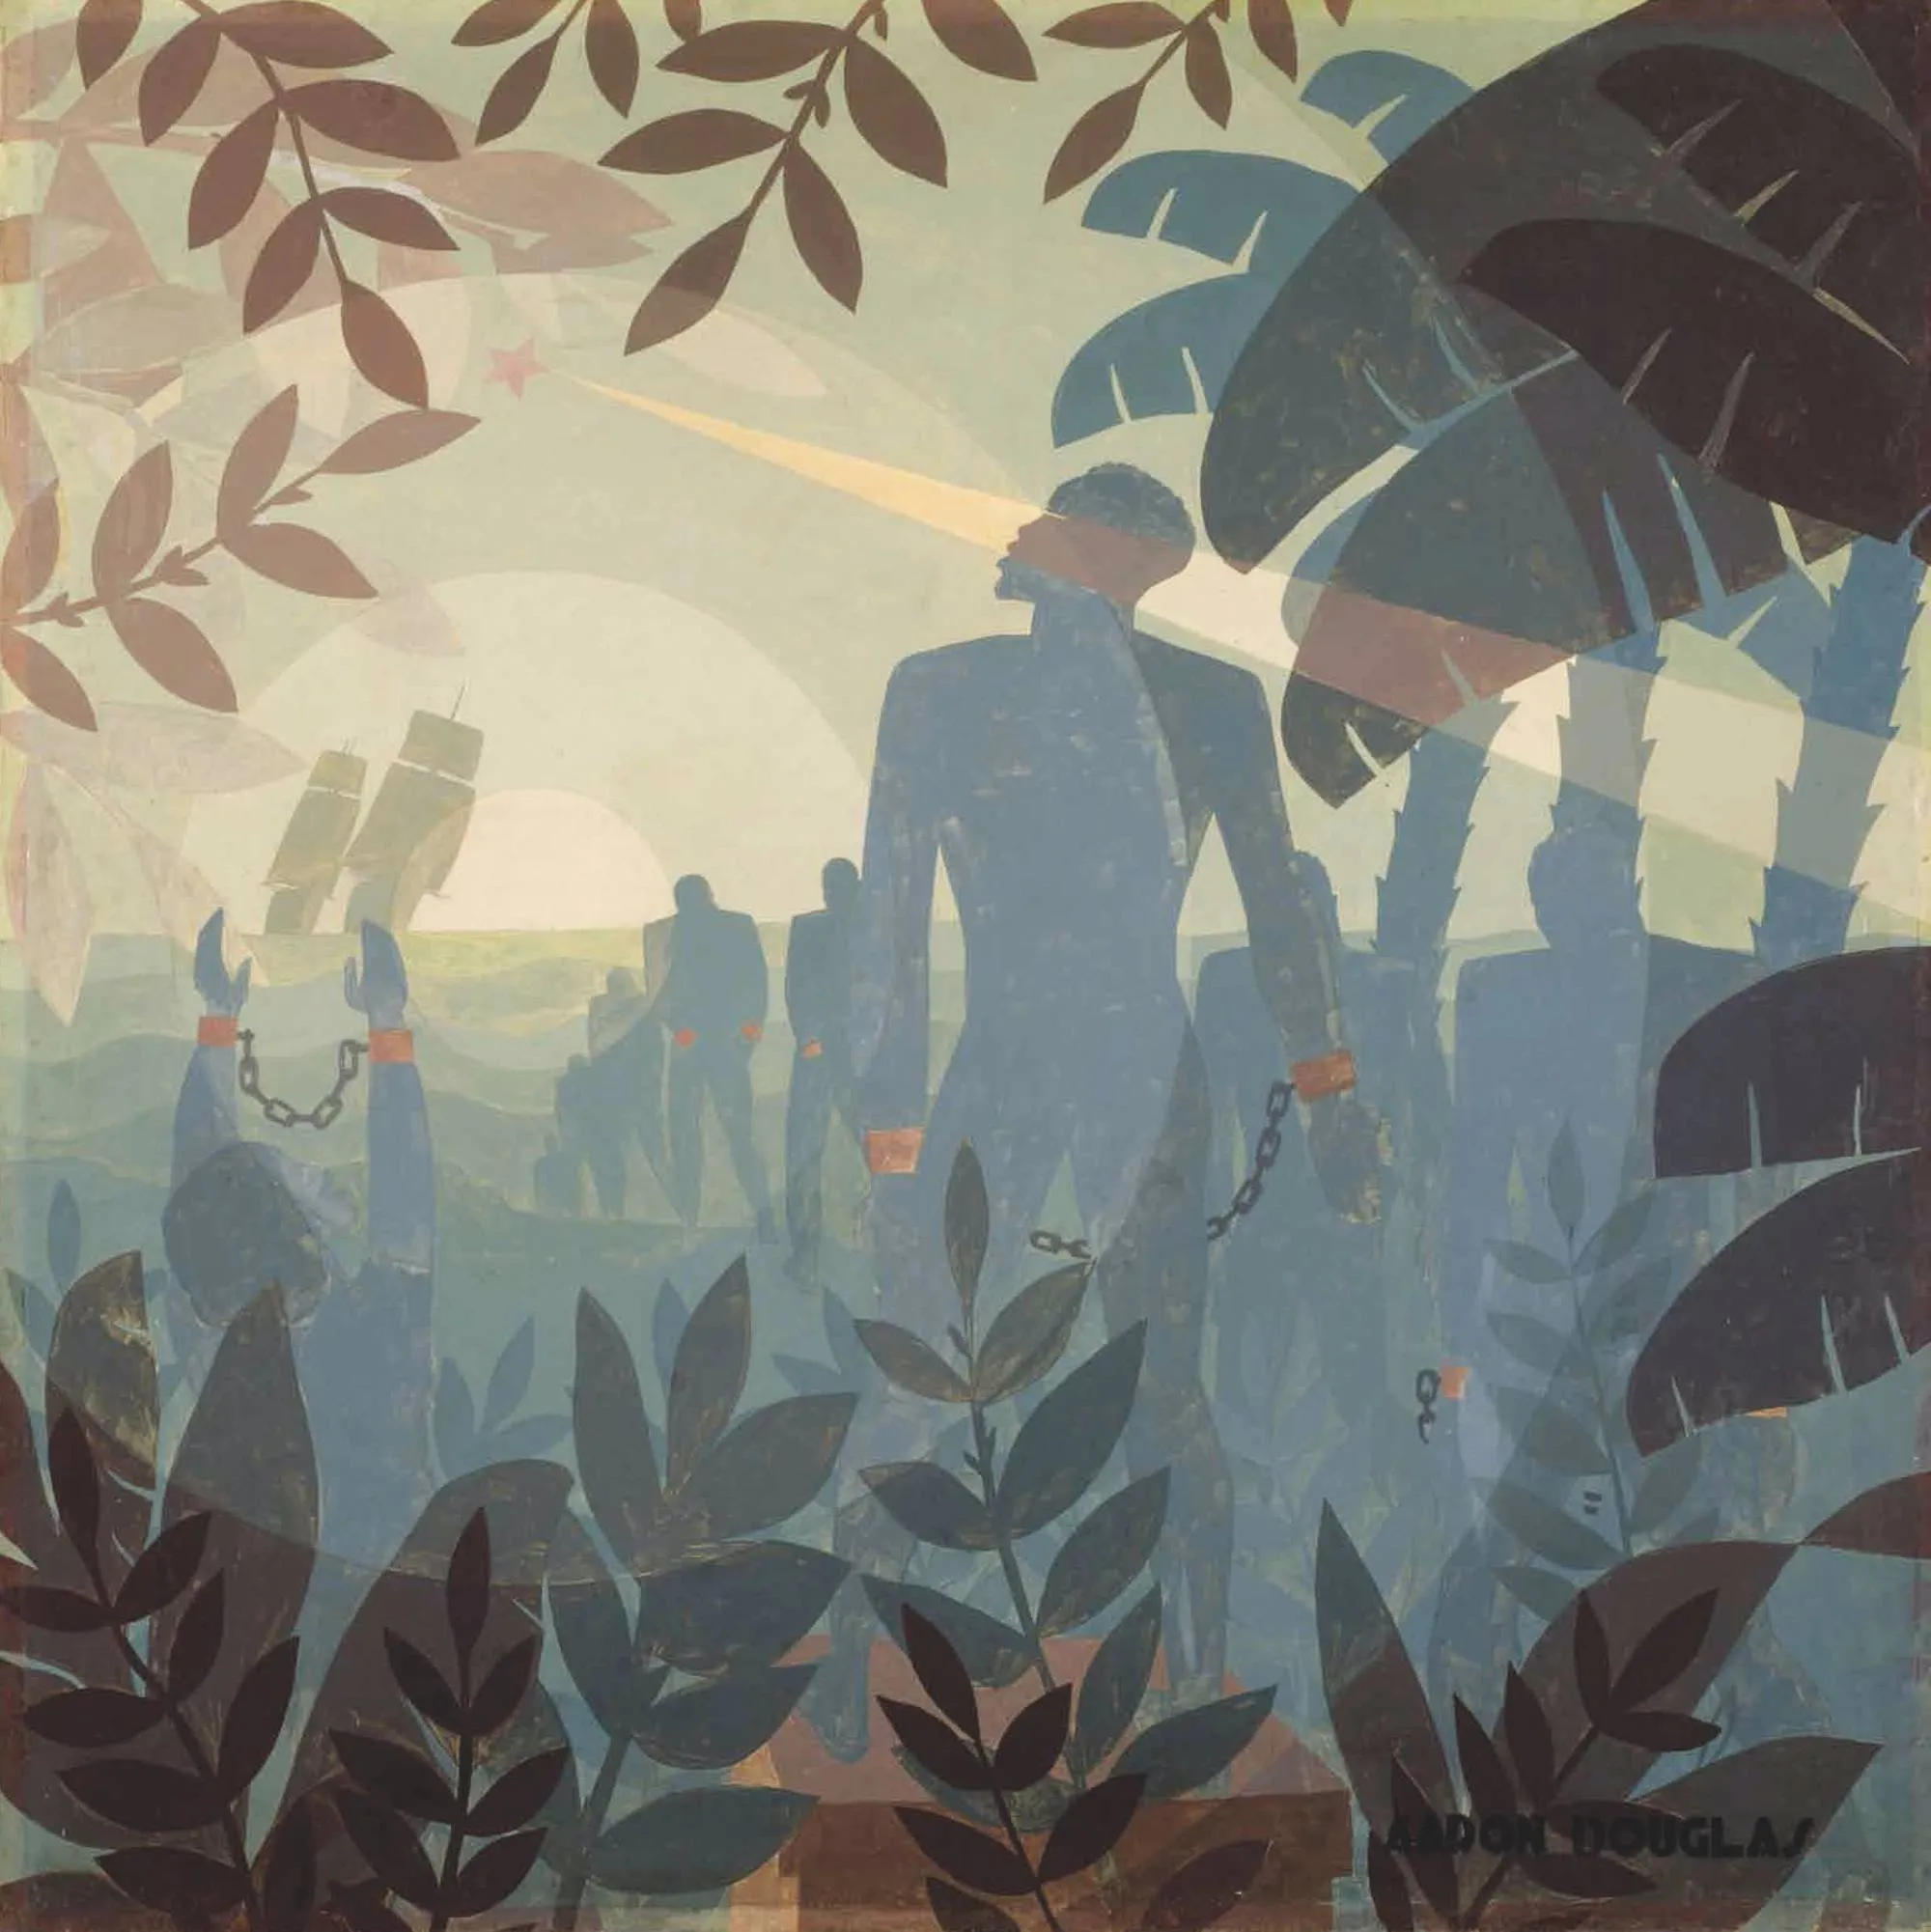 Aaron Douglas, Into bondage, 1936, huile sur toile, 153 × 154 cm, National Gallery of Art, Washington, États-Unis.